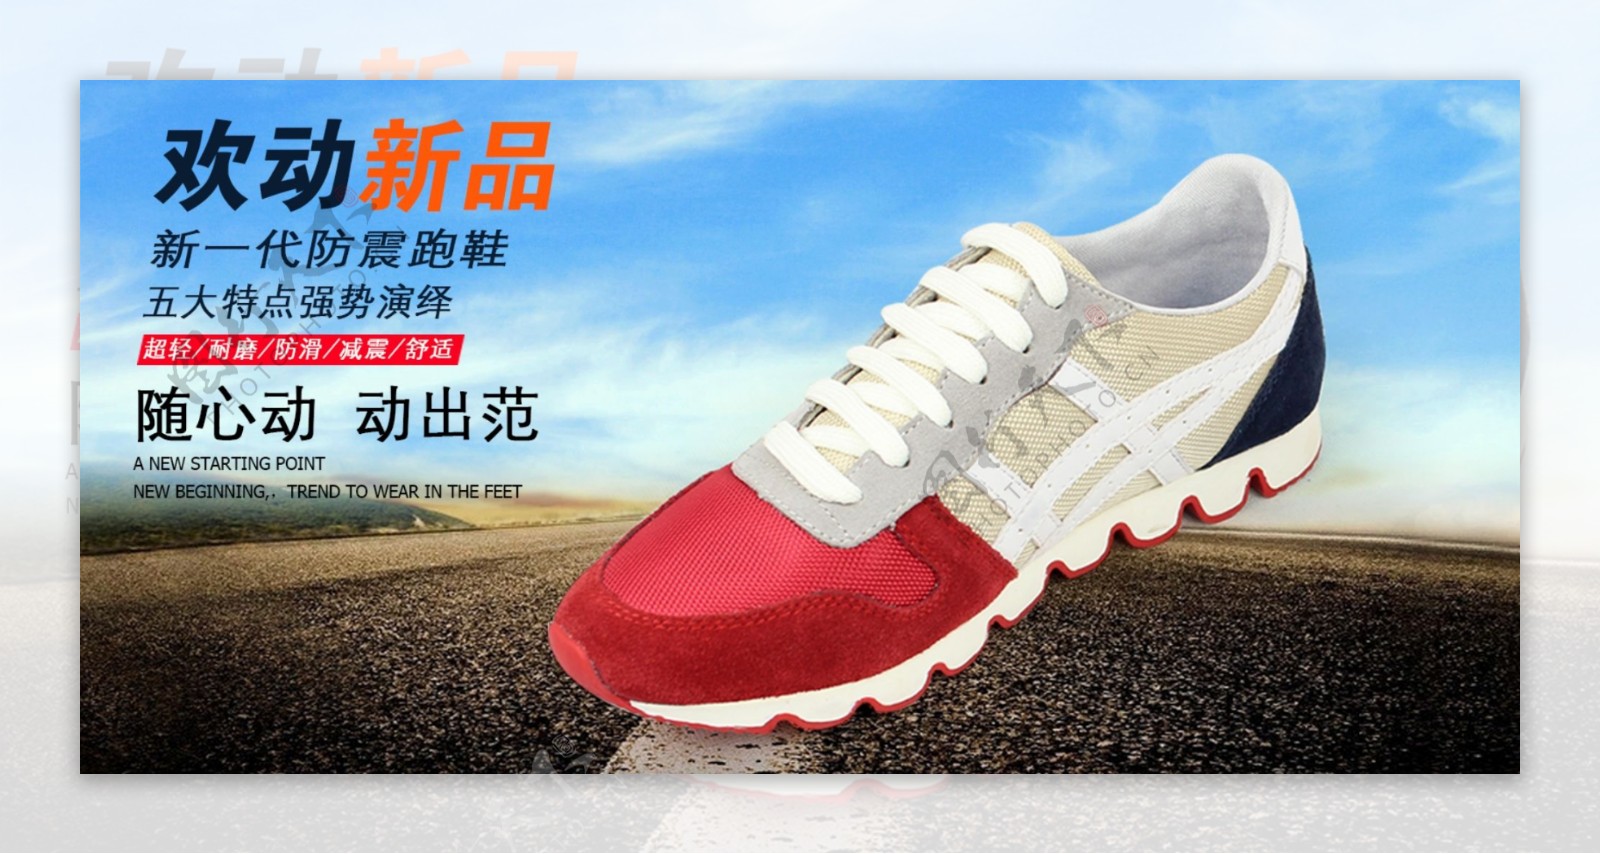 瑞福林老北京布鞋图片